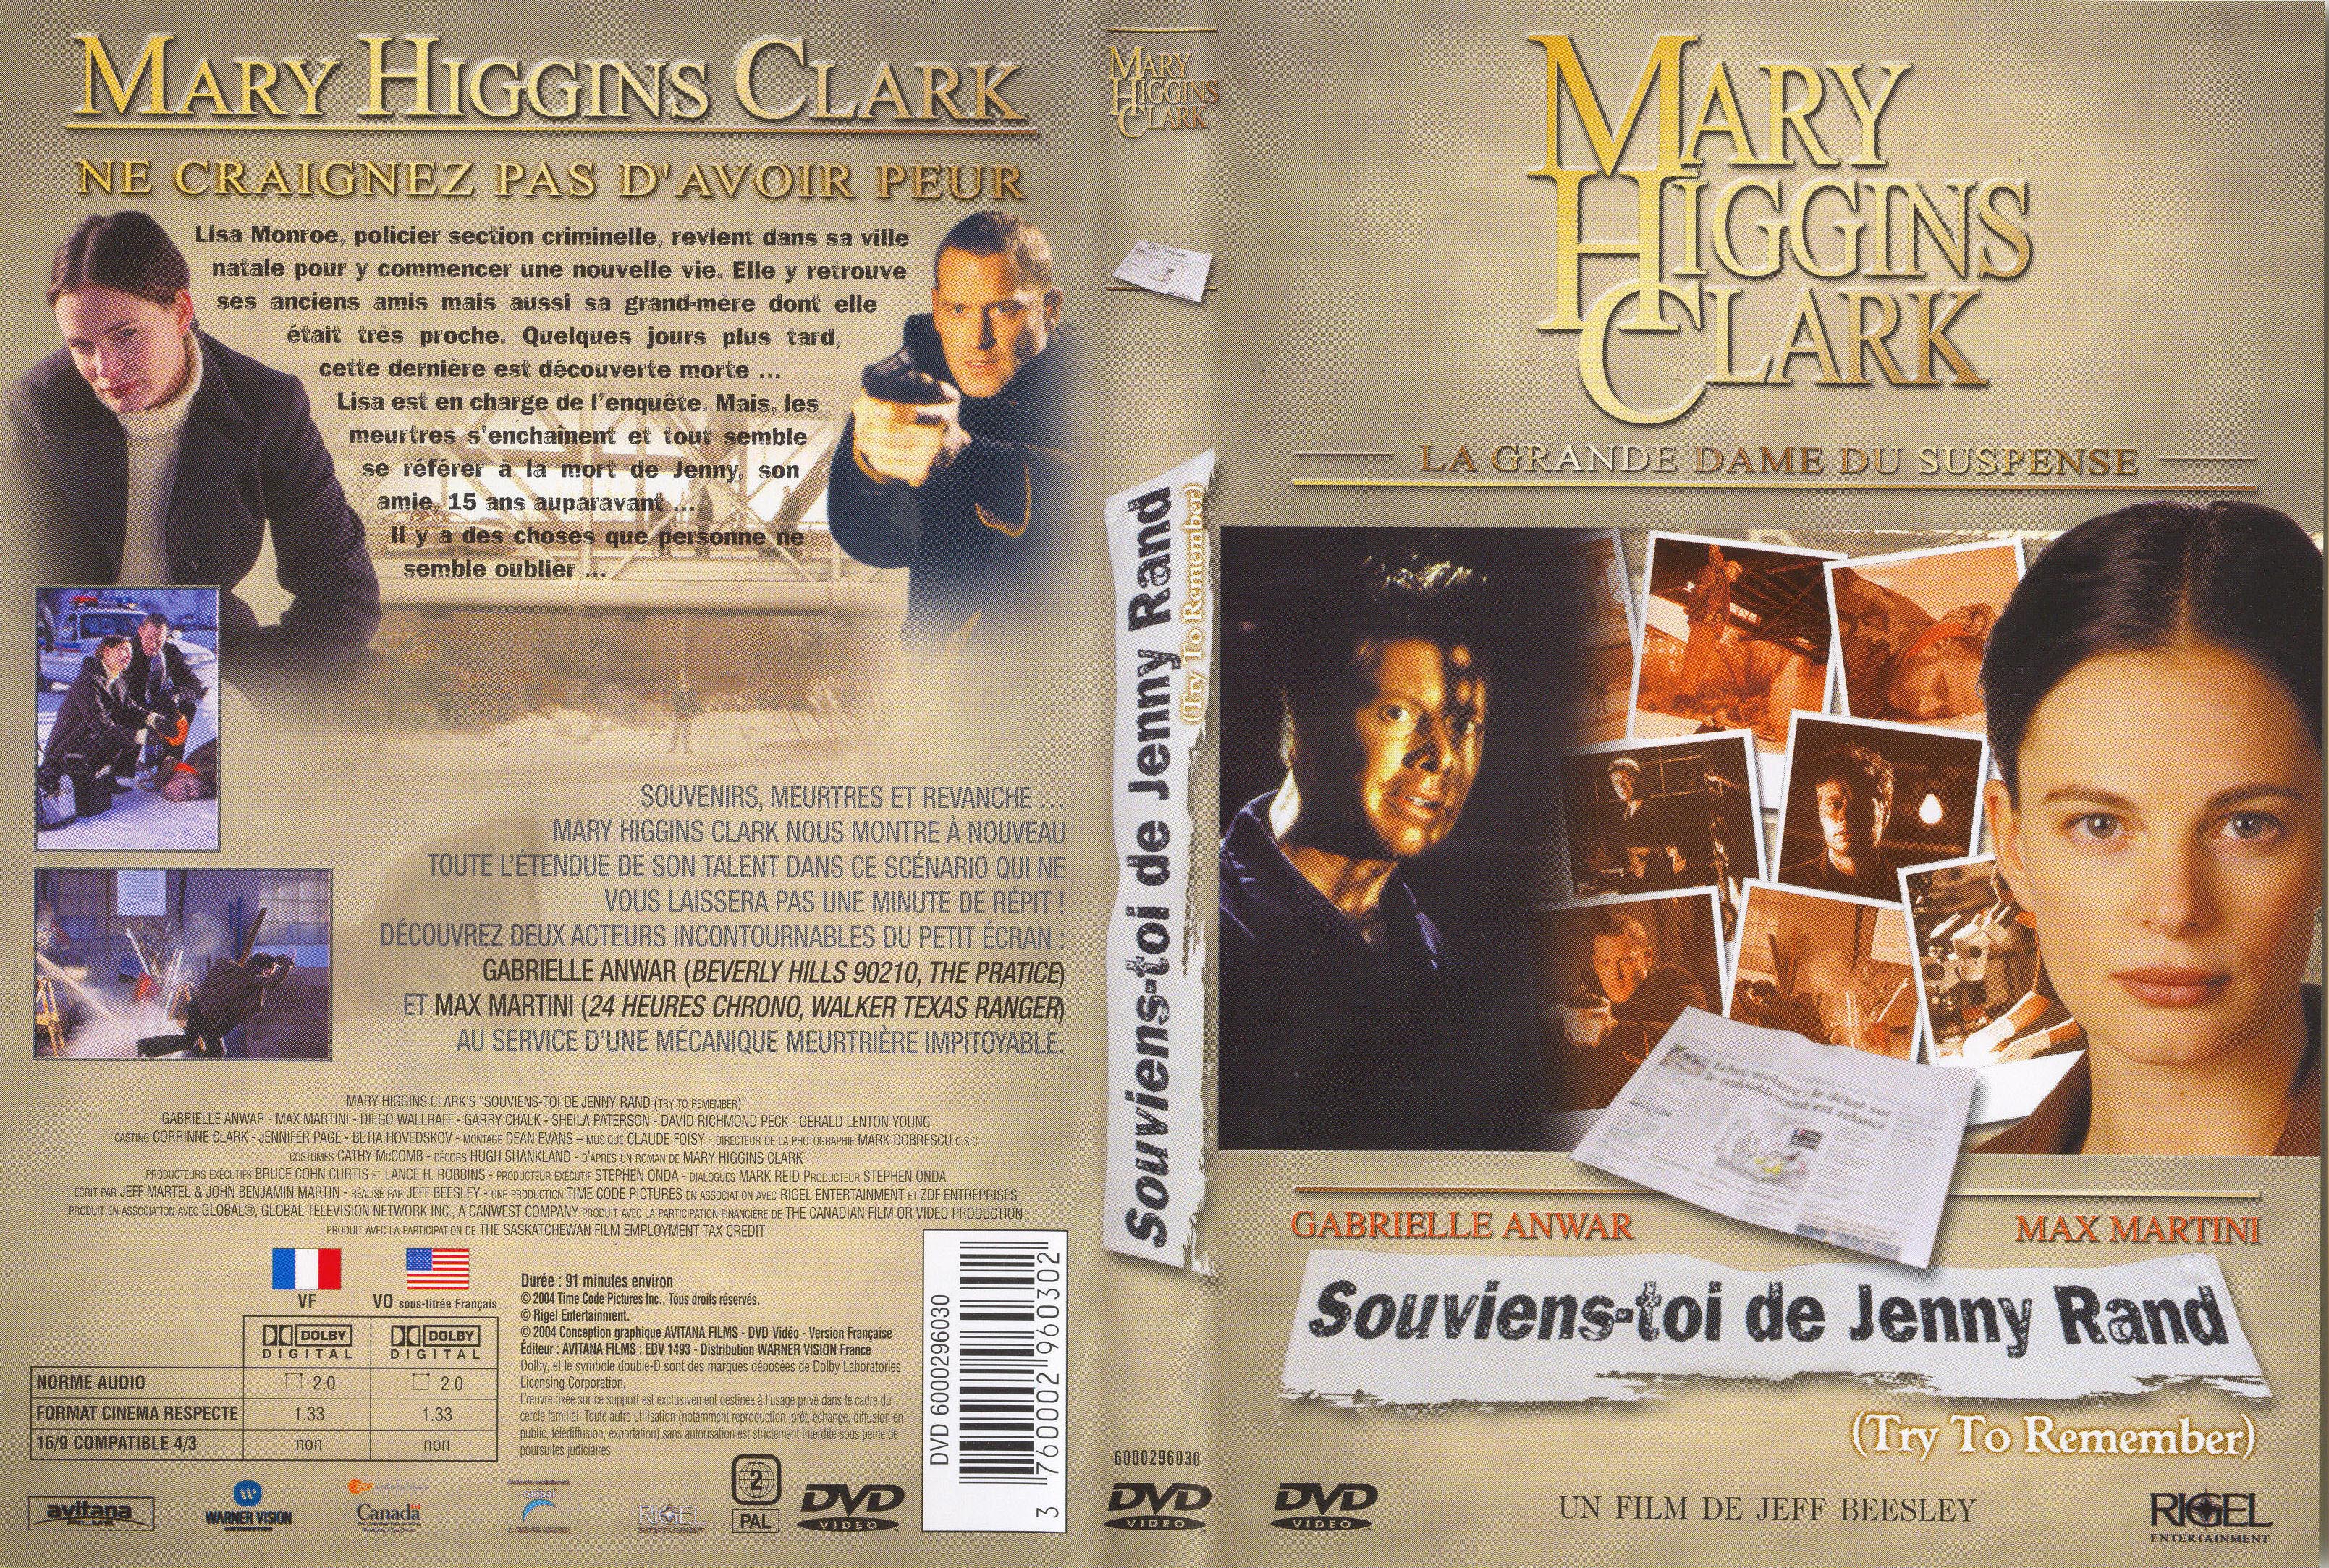 Jaquette DVD Mary Higgins Clark vol 15 - Souviens toi de Jenny Rand v2